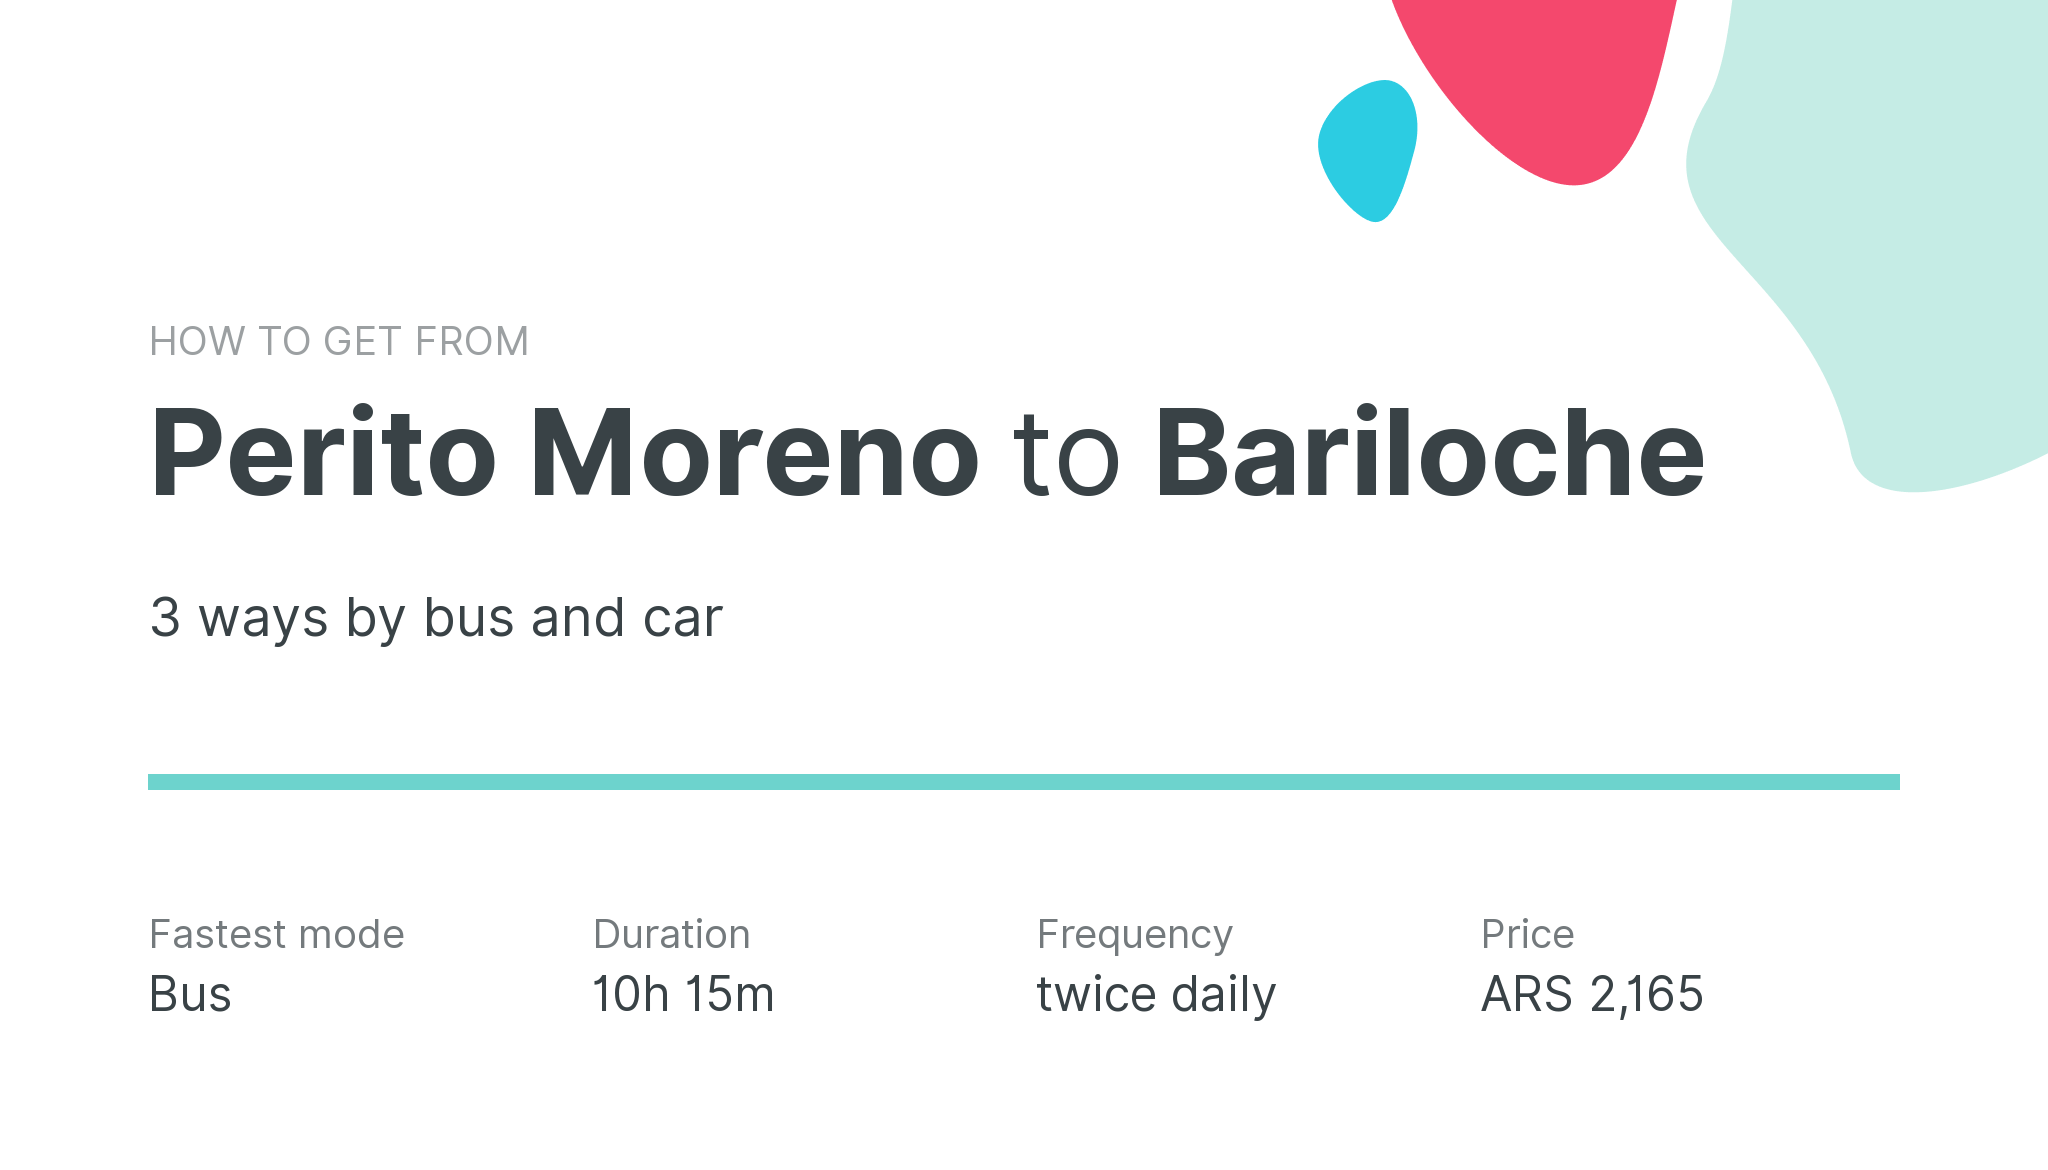 How do I get from Perito Moreno to Bariloche